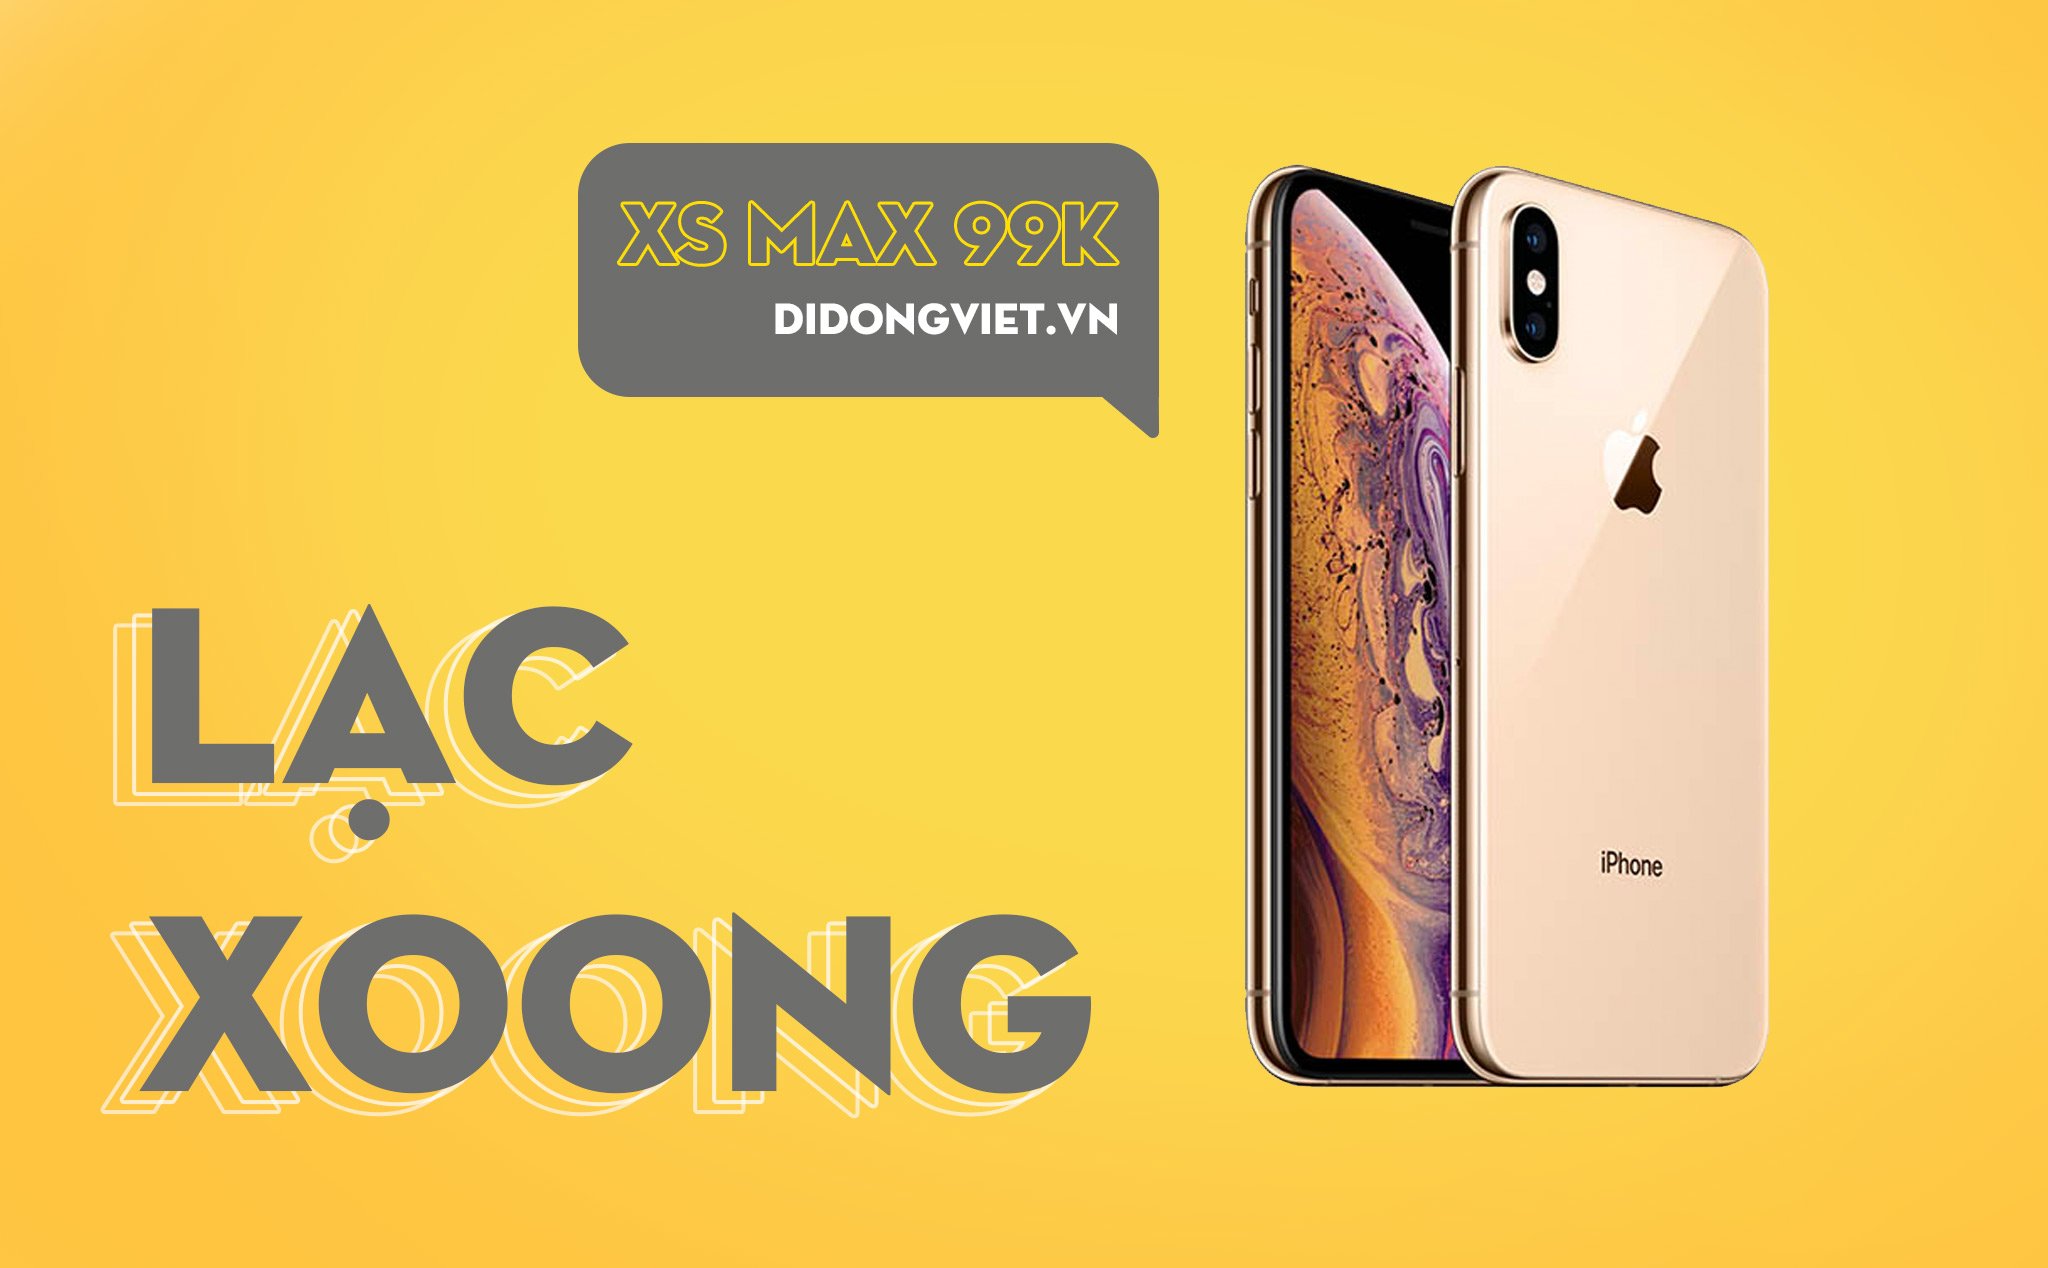 Lạc Xoong 2021: iPhone Xs Max màu Gold, 64GB giá bán 99 ngàn đồng